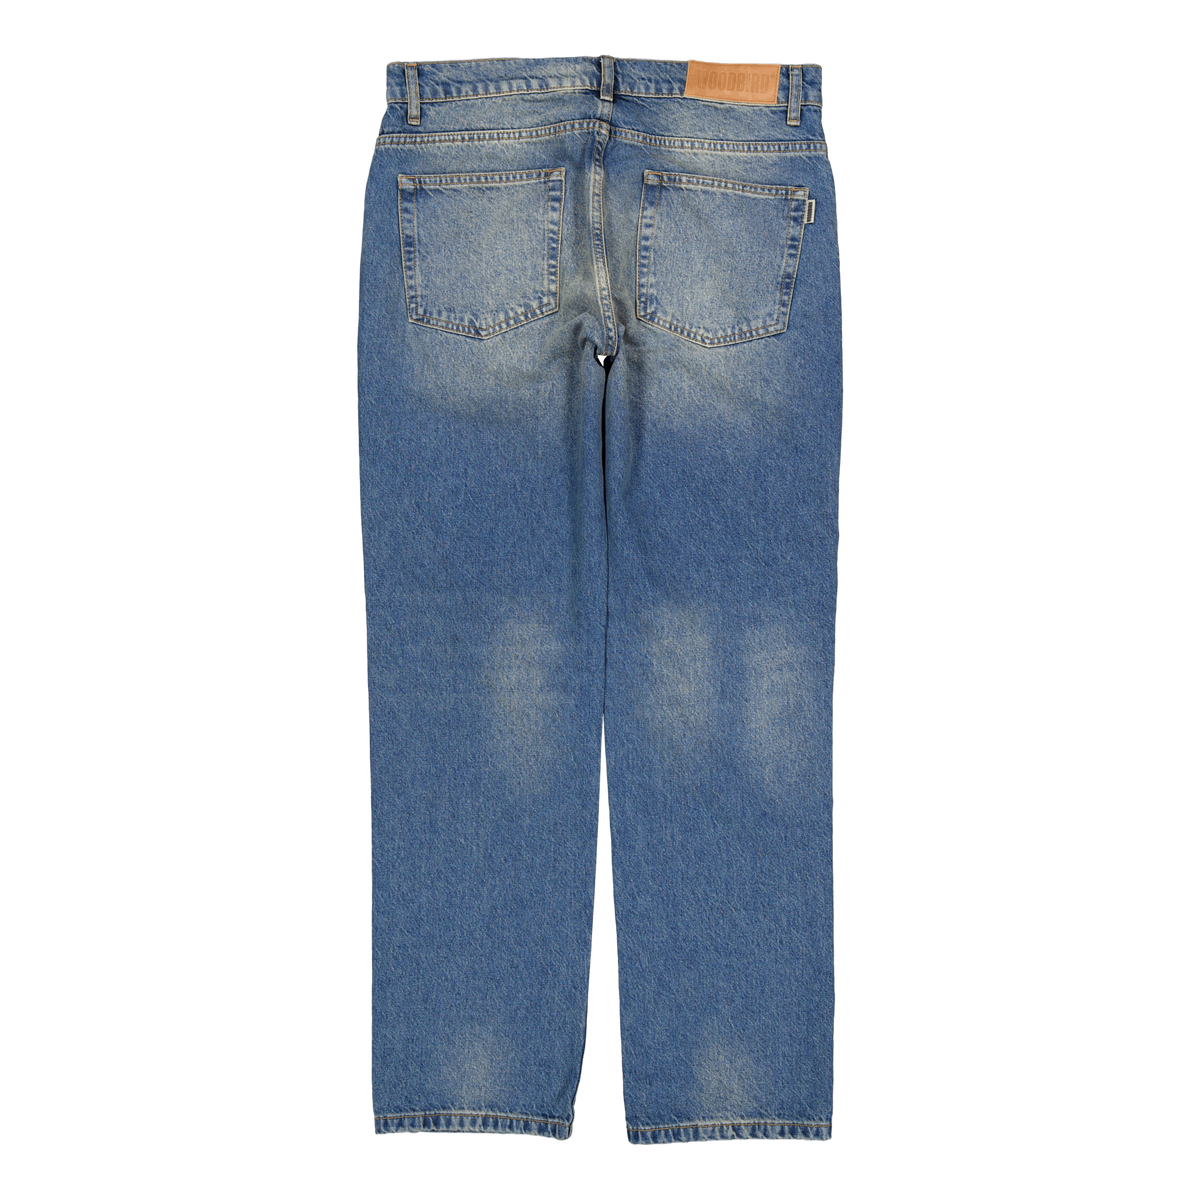 Wbjay Wei Jeans Vintage Blue